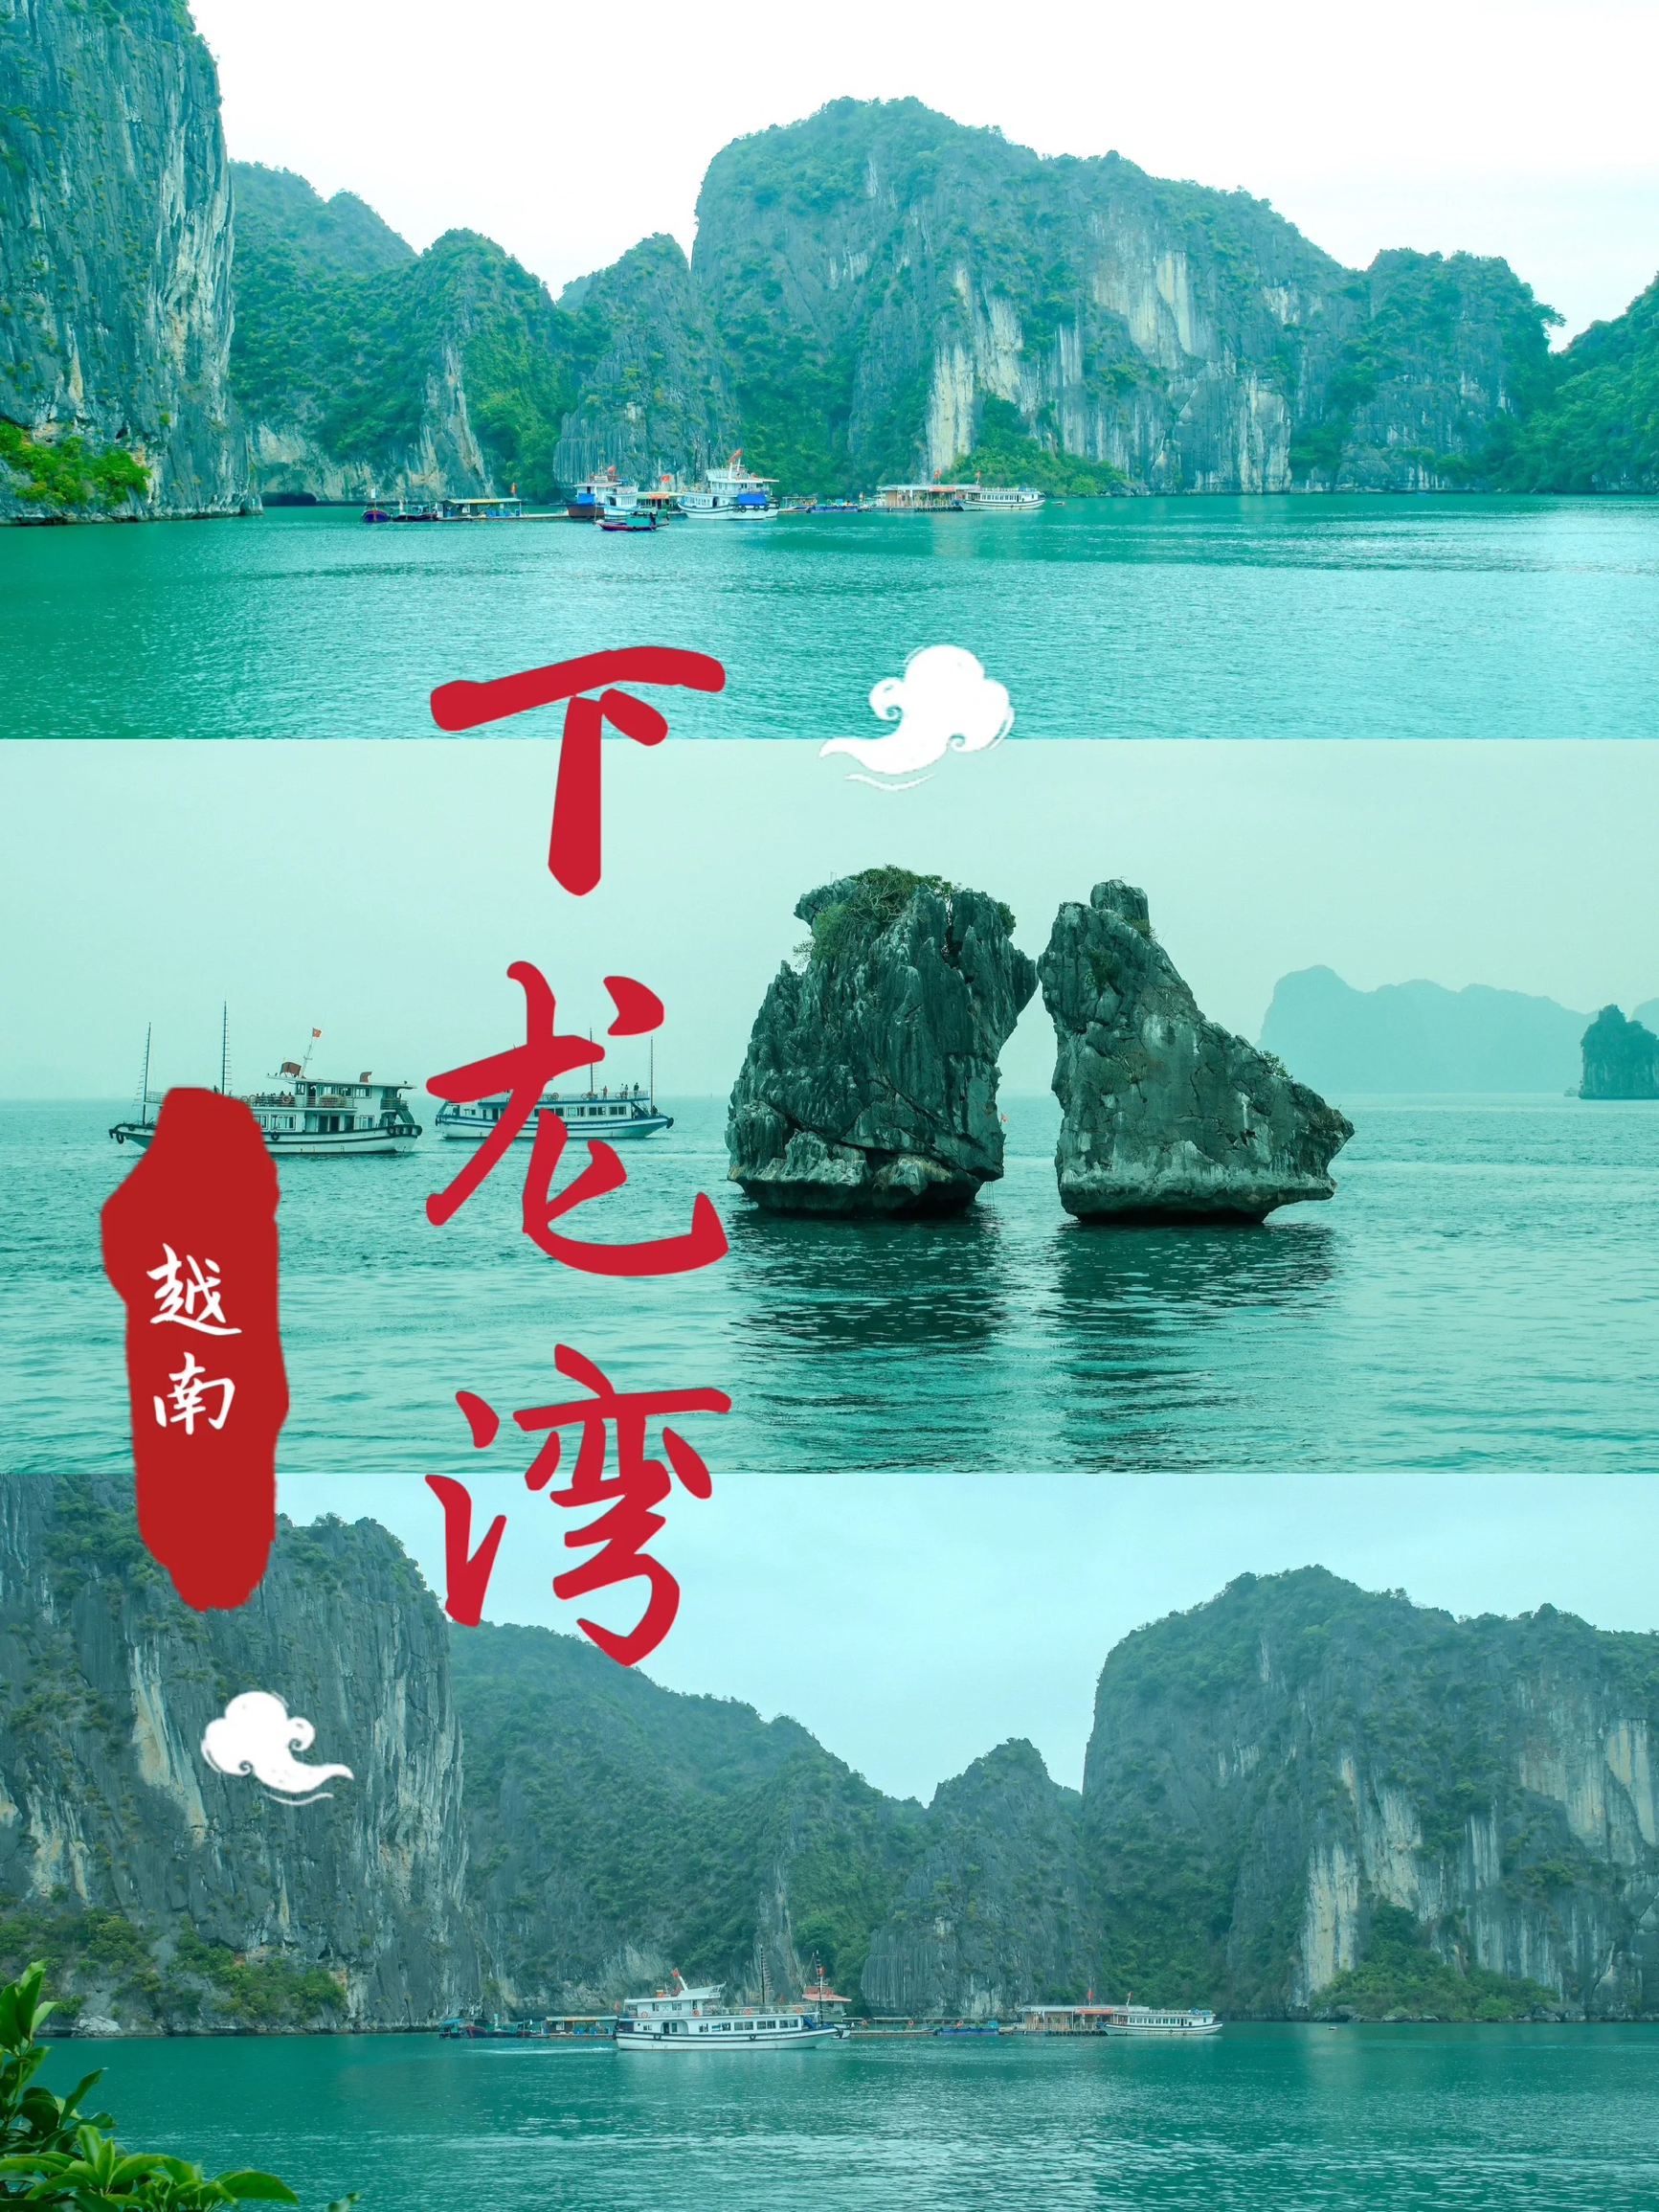 越南下龙湾海上桂林 联合国教科文组织评为新的“世界第七自然奇观”“海上桂林”，越南必游著名景点，风景